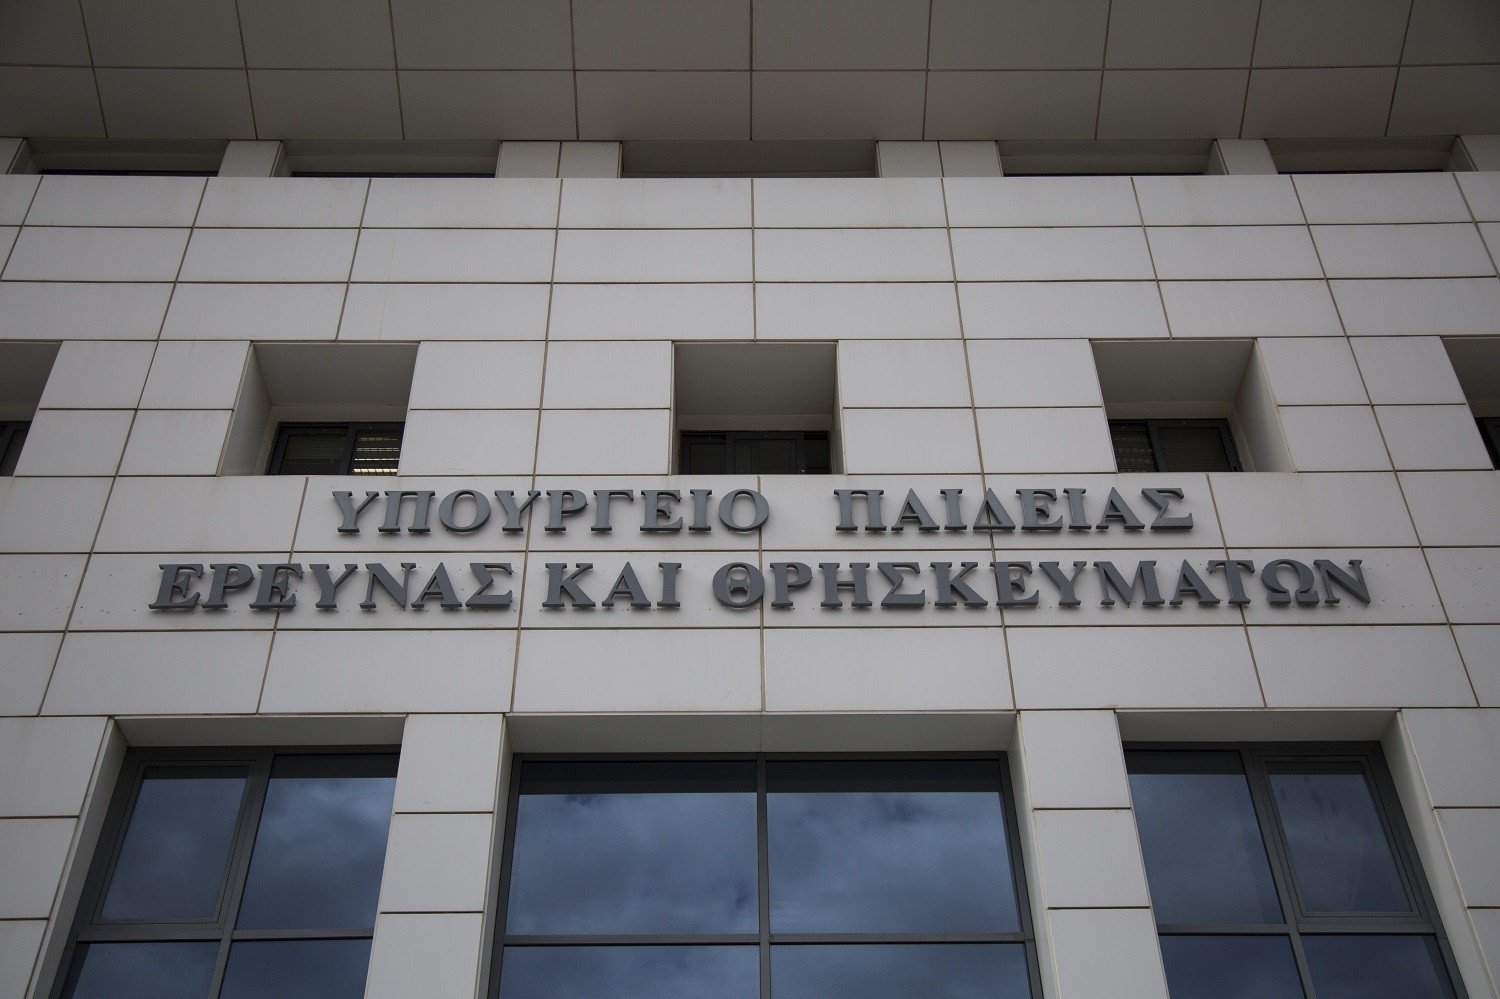 Ηλεκτρονικά στο gov.gr οι αιτήσεις παραίτησης εκπαιδευτικών